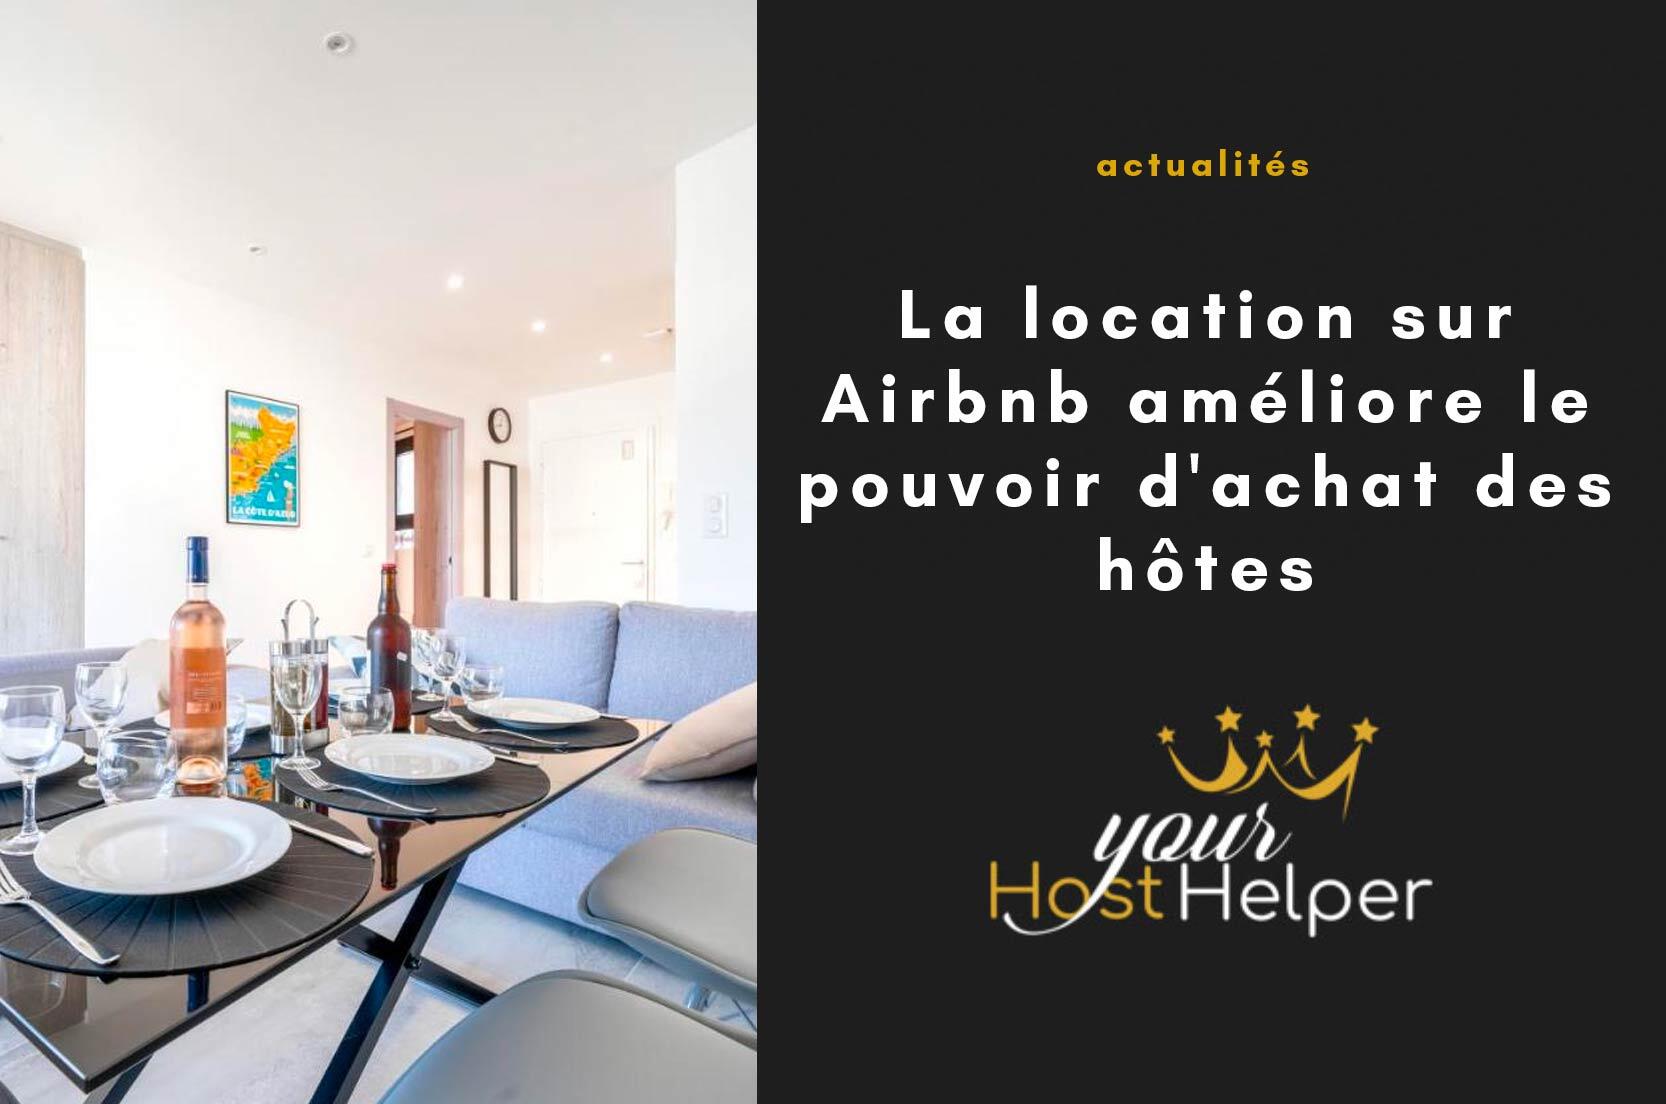 You are currently viewing La location sur Airbnb améliore le pouvoir d’achat des hôtes